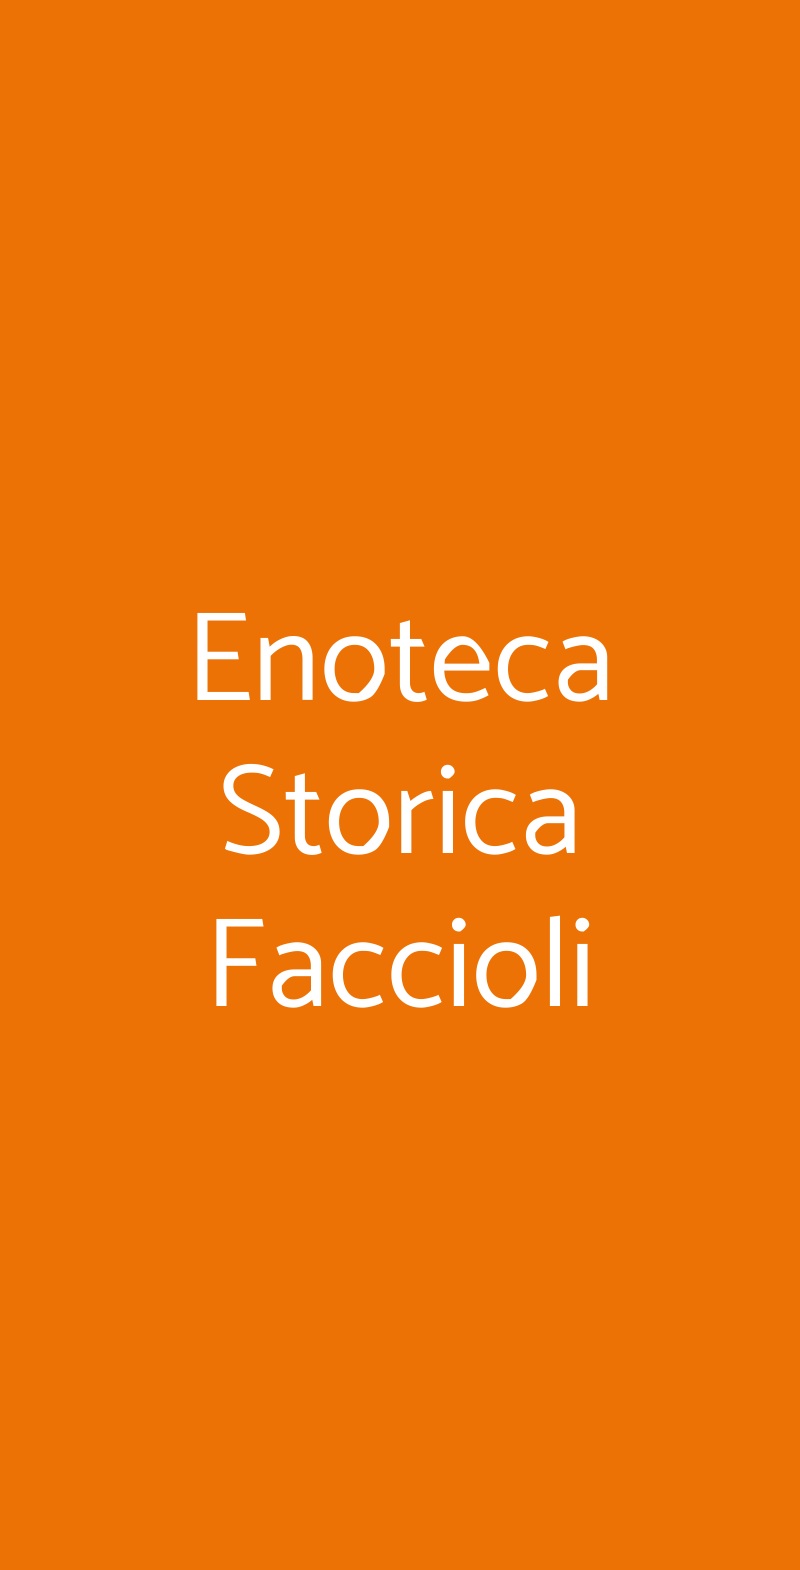 Enoteca Storica Faccioli Bologna menù 1 pagina